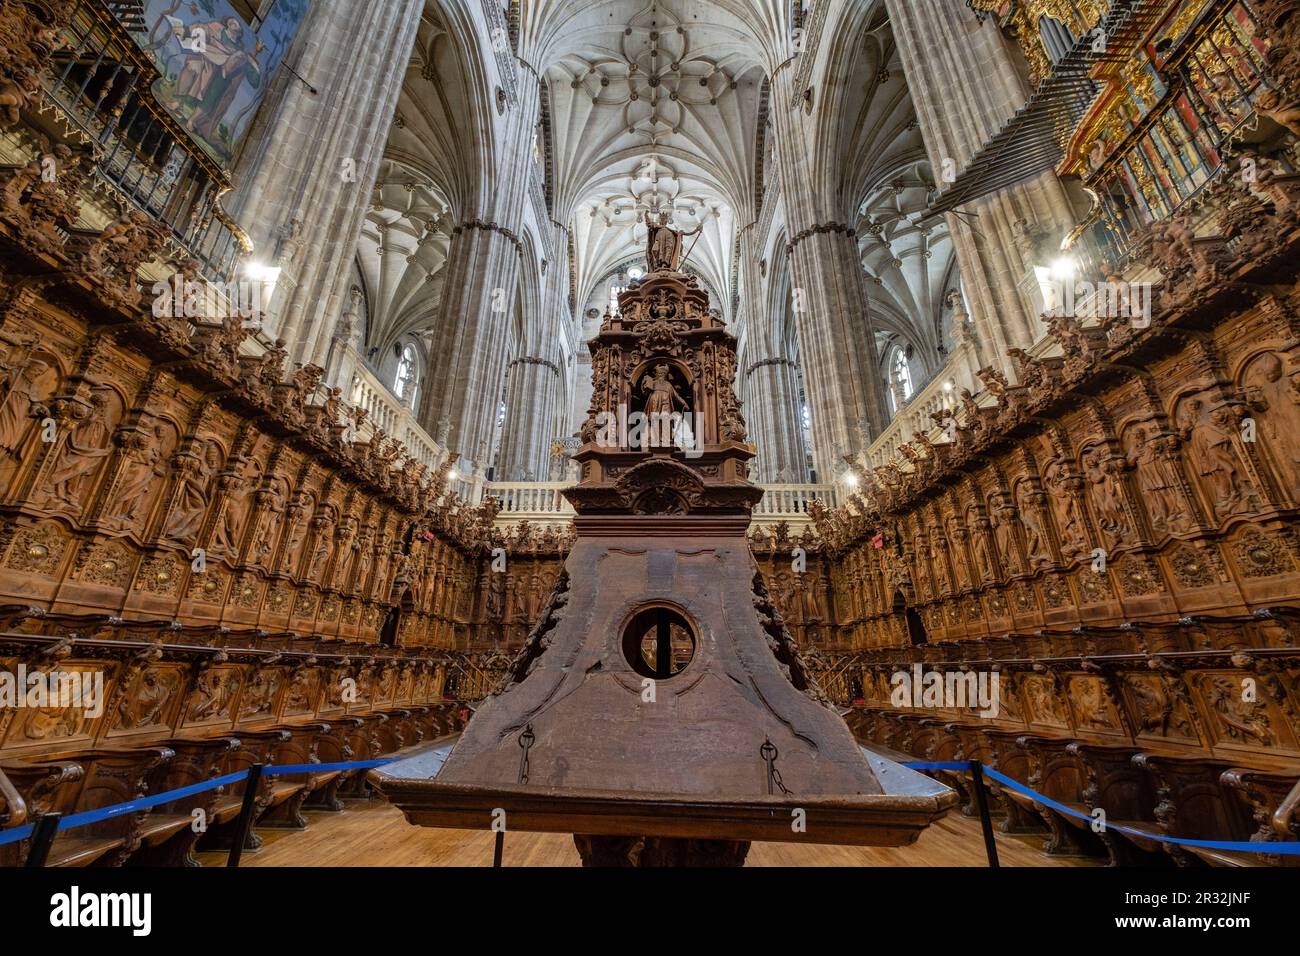 coro, Catedral de la Asunción de la Virgen, Salamanca, comunidad autónoma de Castilla y León, Spain. Stock Photo